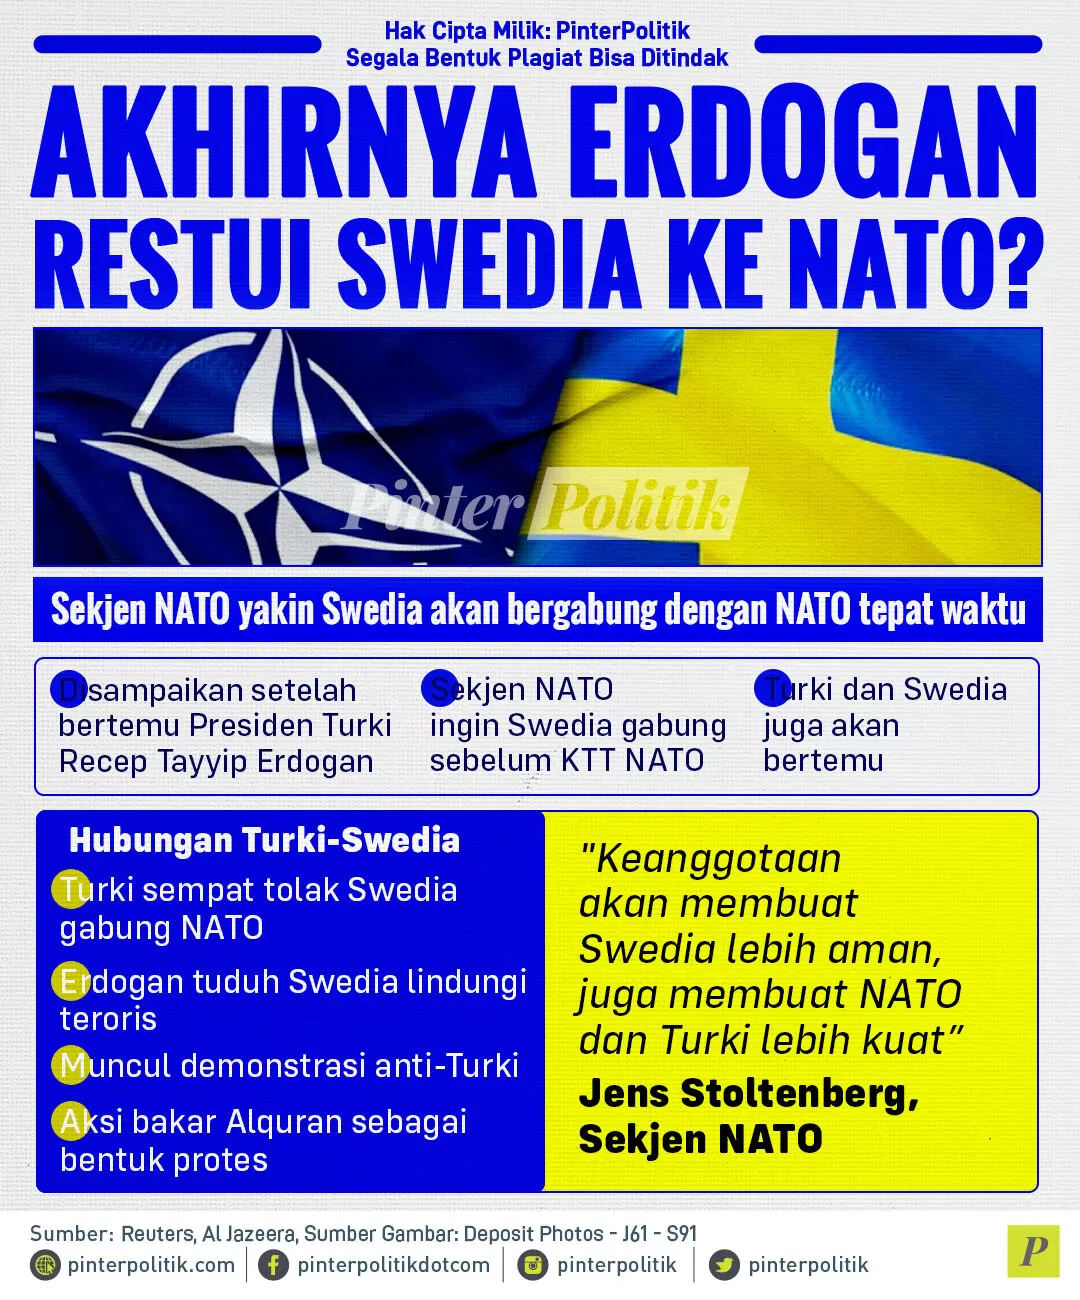 akhirnya erdogan restui swedia ke nato